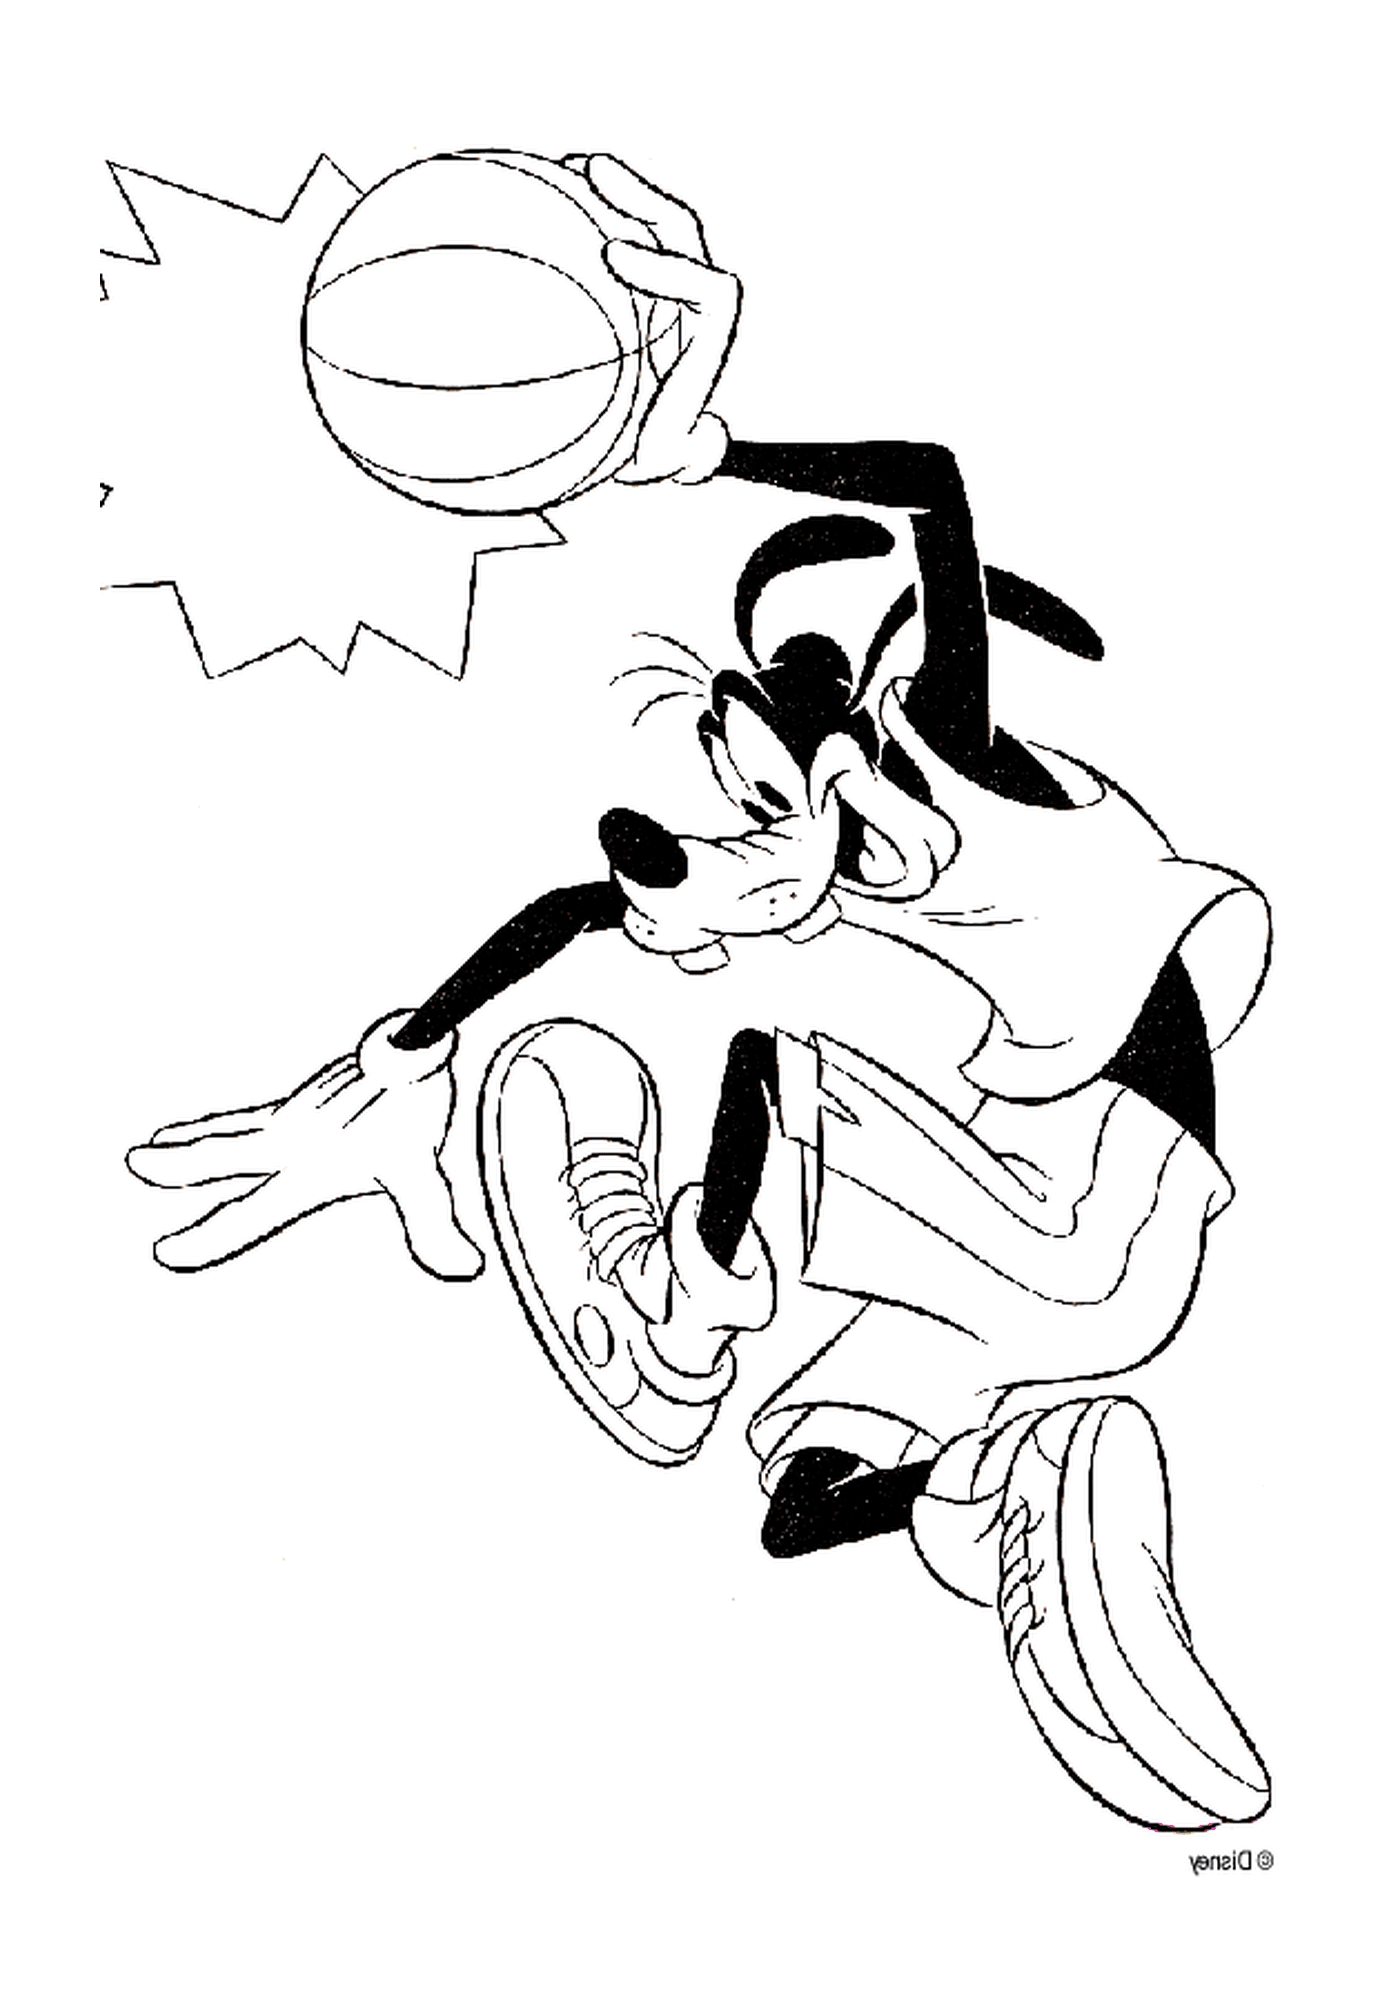  Dingo gioca a basket con una palla 